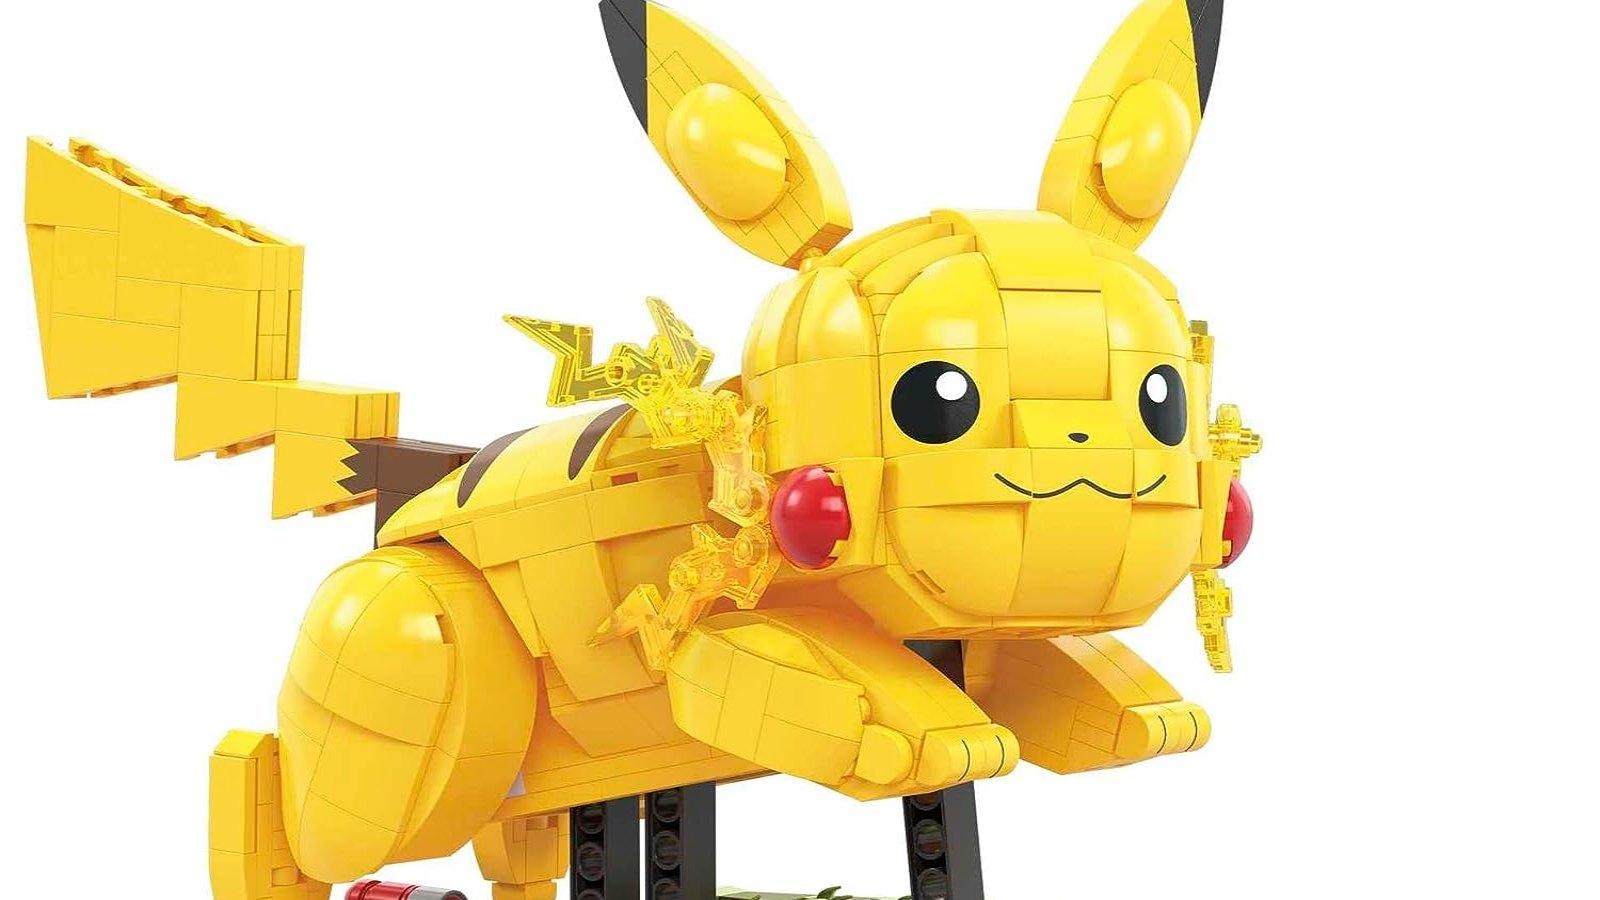 Pikachu lego-like figure from Mattel